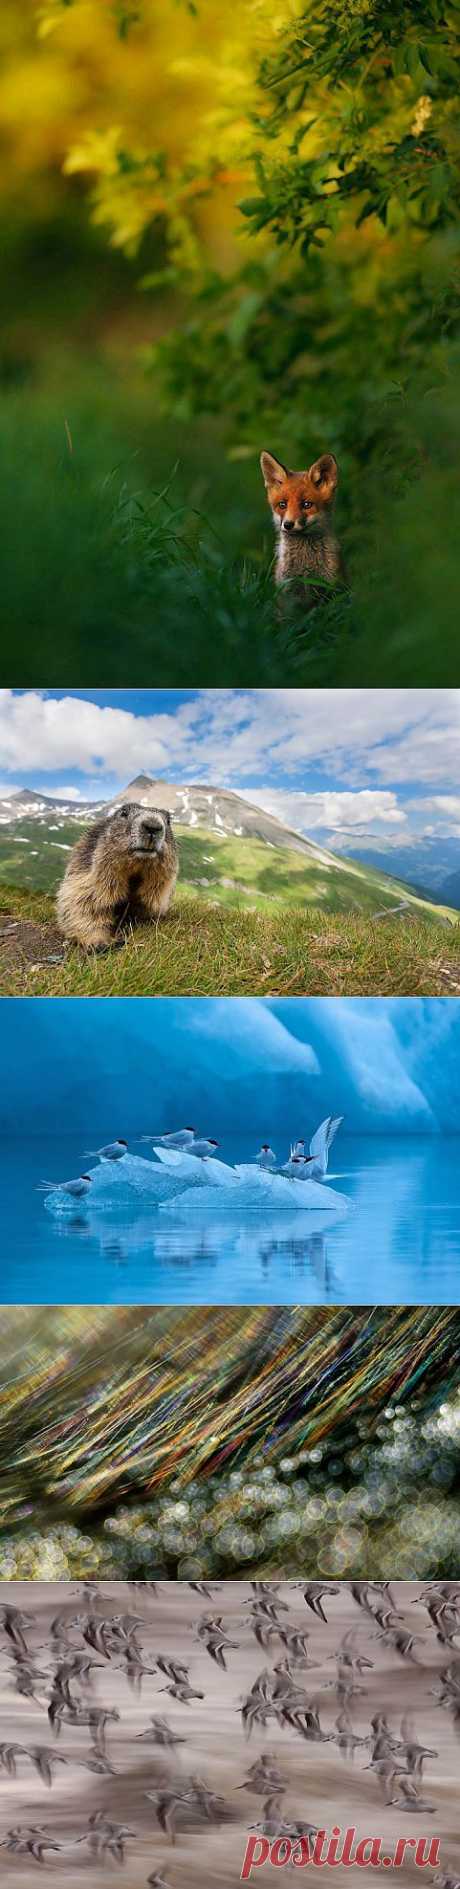 (+1) - Победители европейского конкурса фотографии дикой природы GDT 2013 | САМЫЙ СОК!